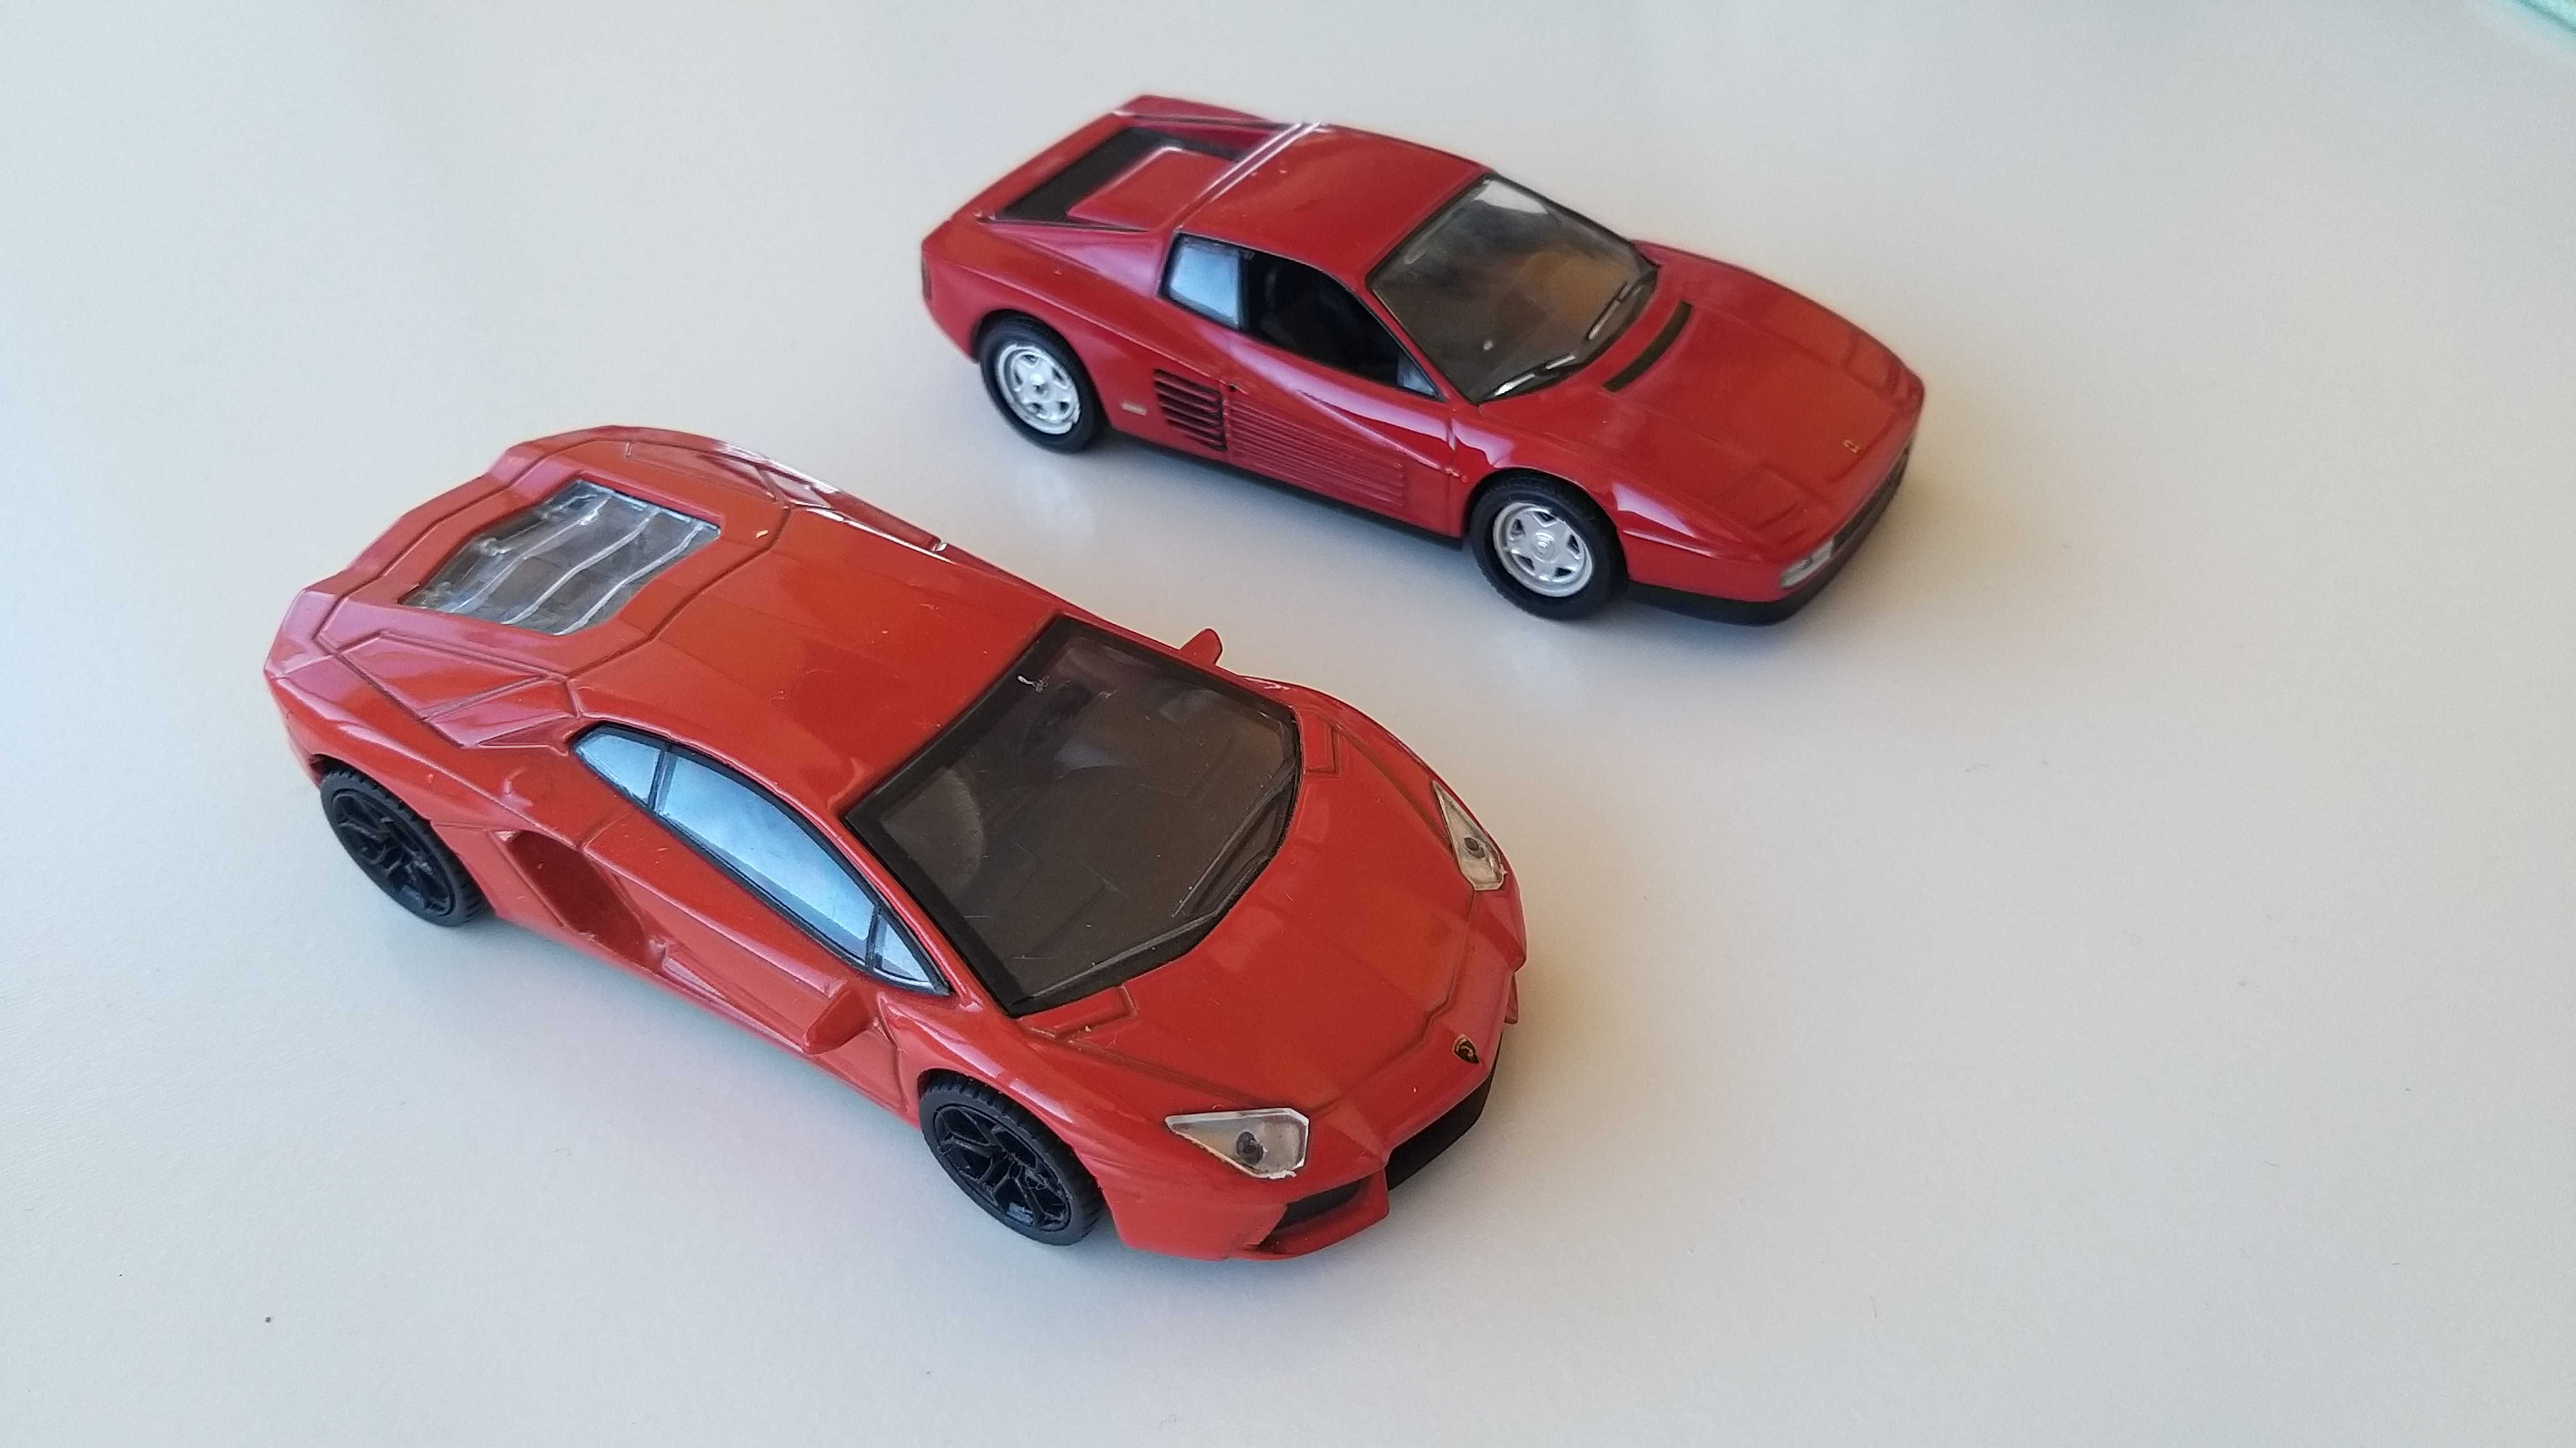 Miniaturas 1/43 Ferrari e lamborghini